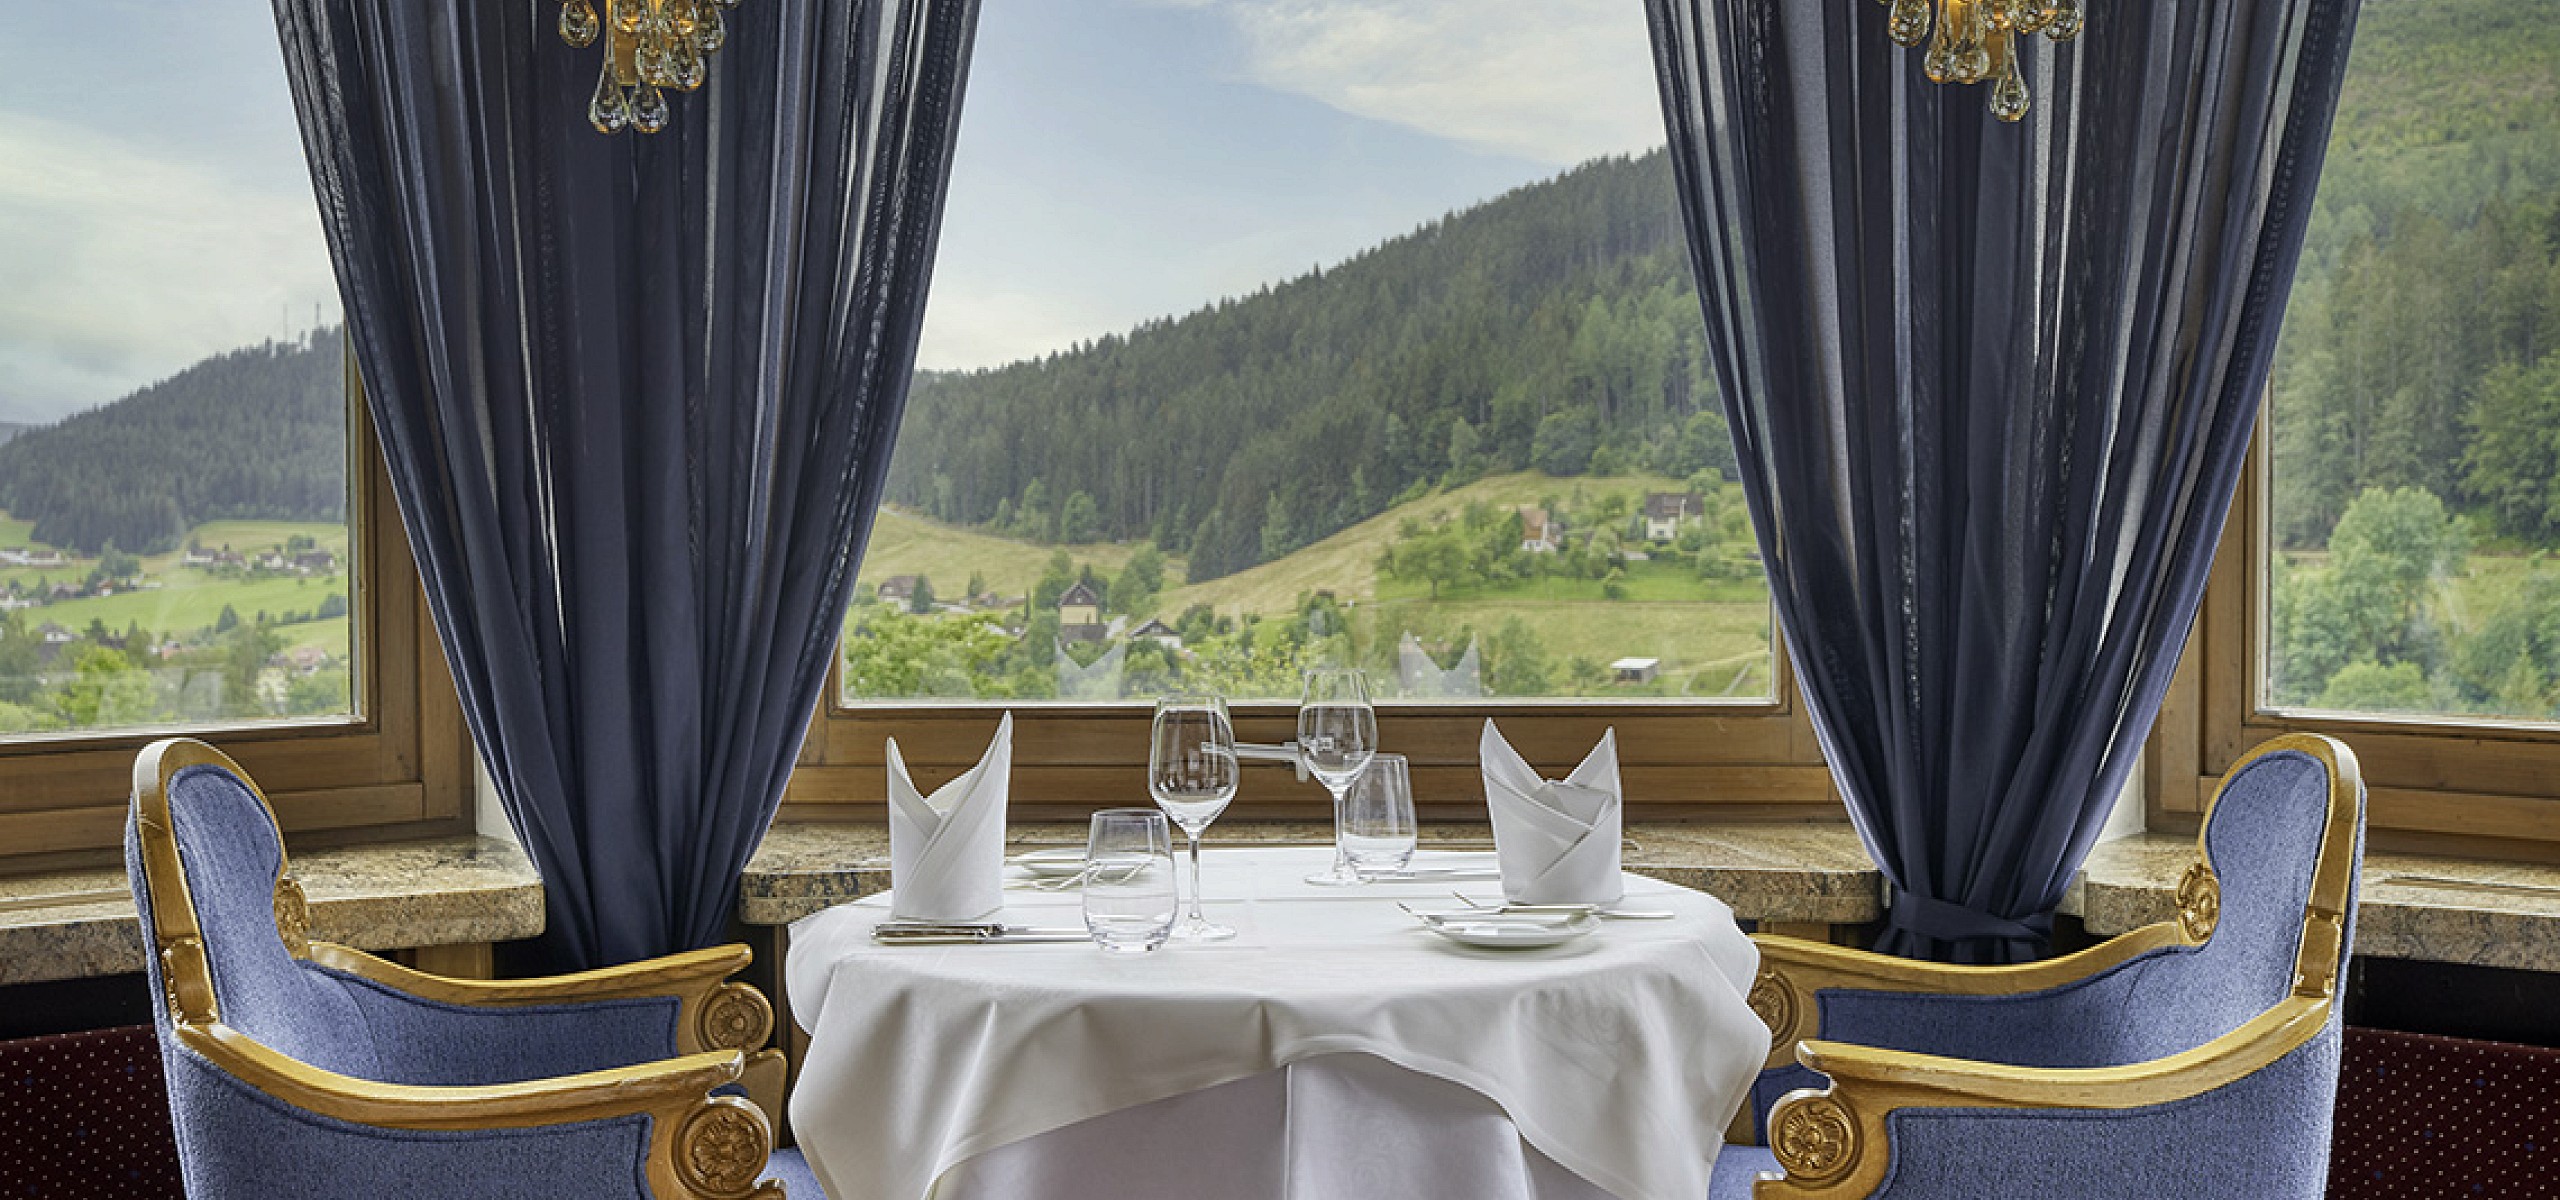 Silberberg Restaurant Traube Tonbach Hotel Schwarzwald - Tisch im Silberberg